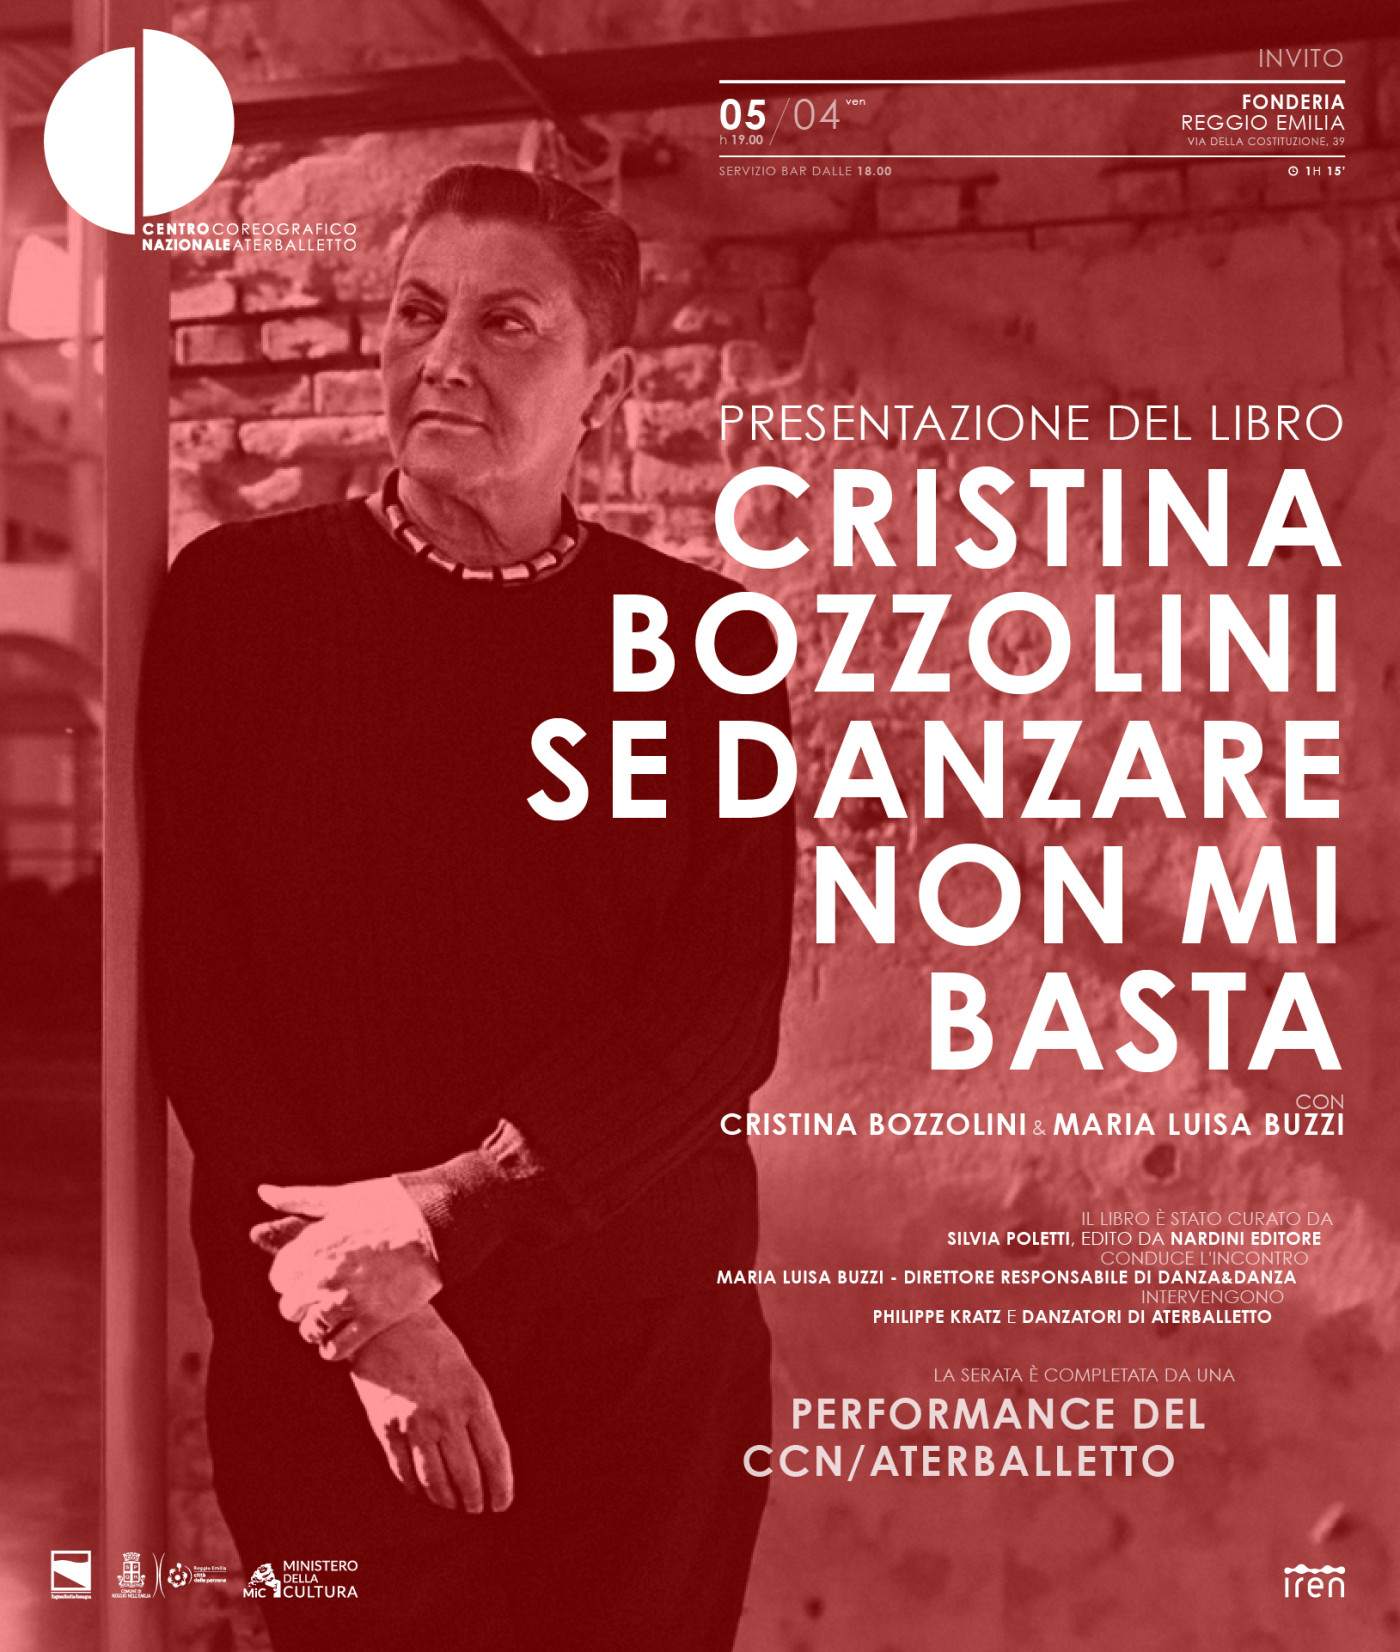 CCN/Aterballetto omaggia Cristina Bozzolini presentando il suo libro curato dalla nostra Silvia Poletti